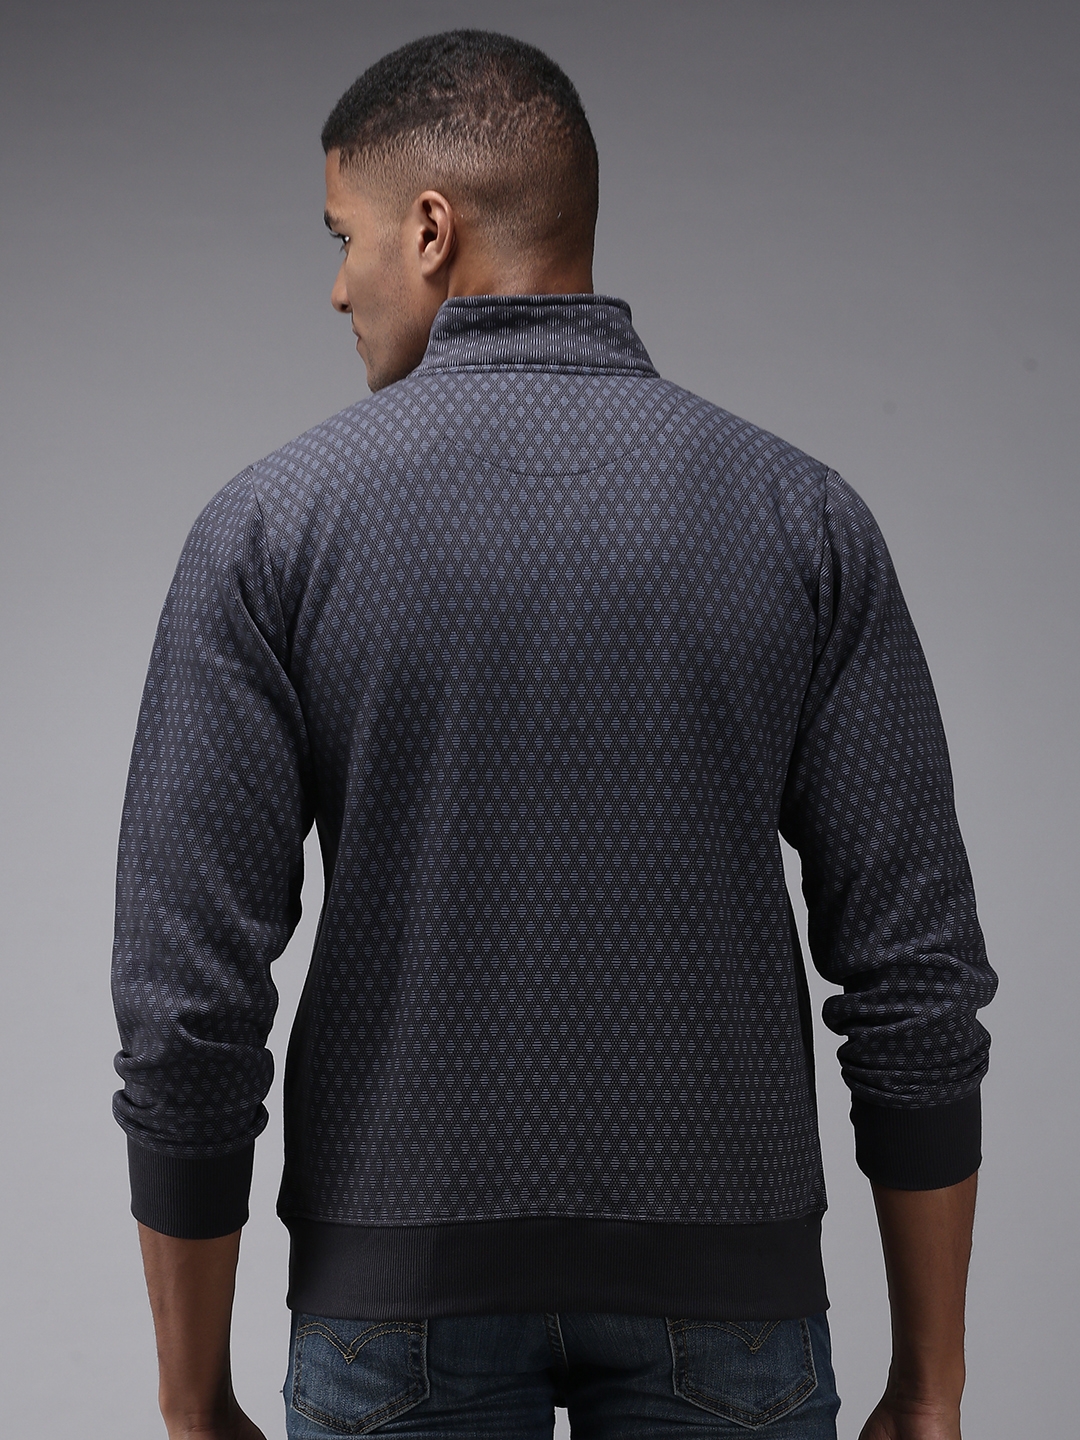 Men's Grey Cotton Printed Activewear Jackets